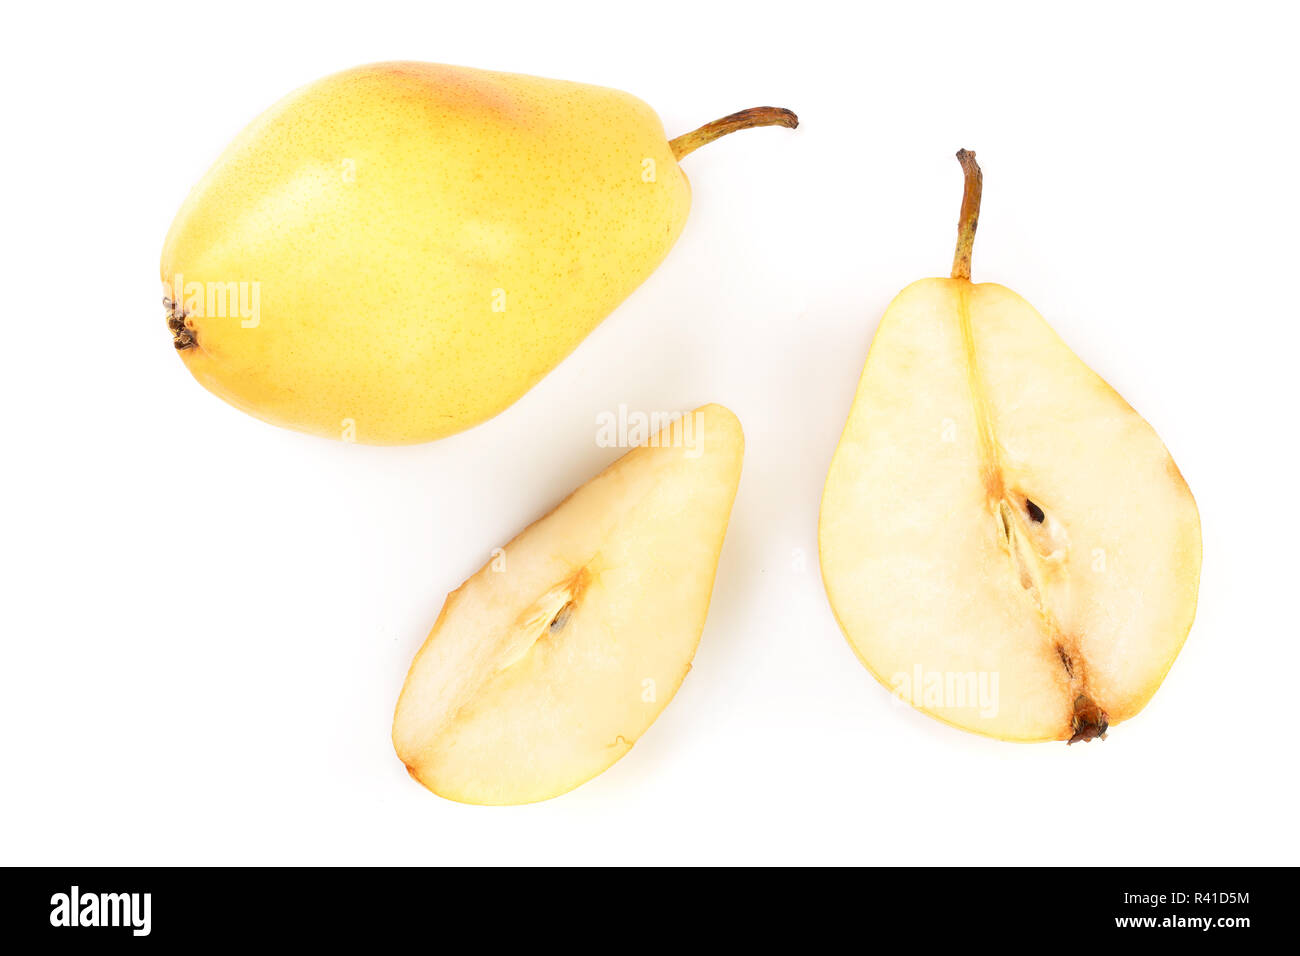 Fruits poire jaune mûr isolé sur fond blanc. Vue d'en haut. Motif de mise à plat Banque D'Images